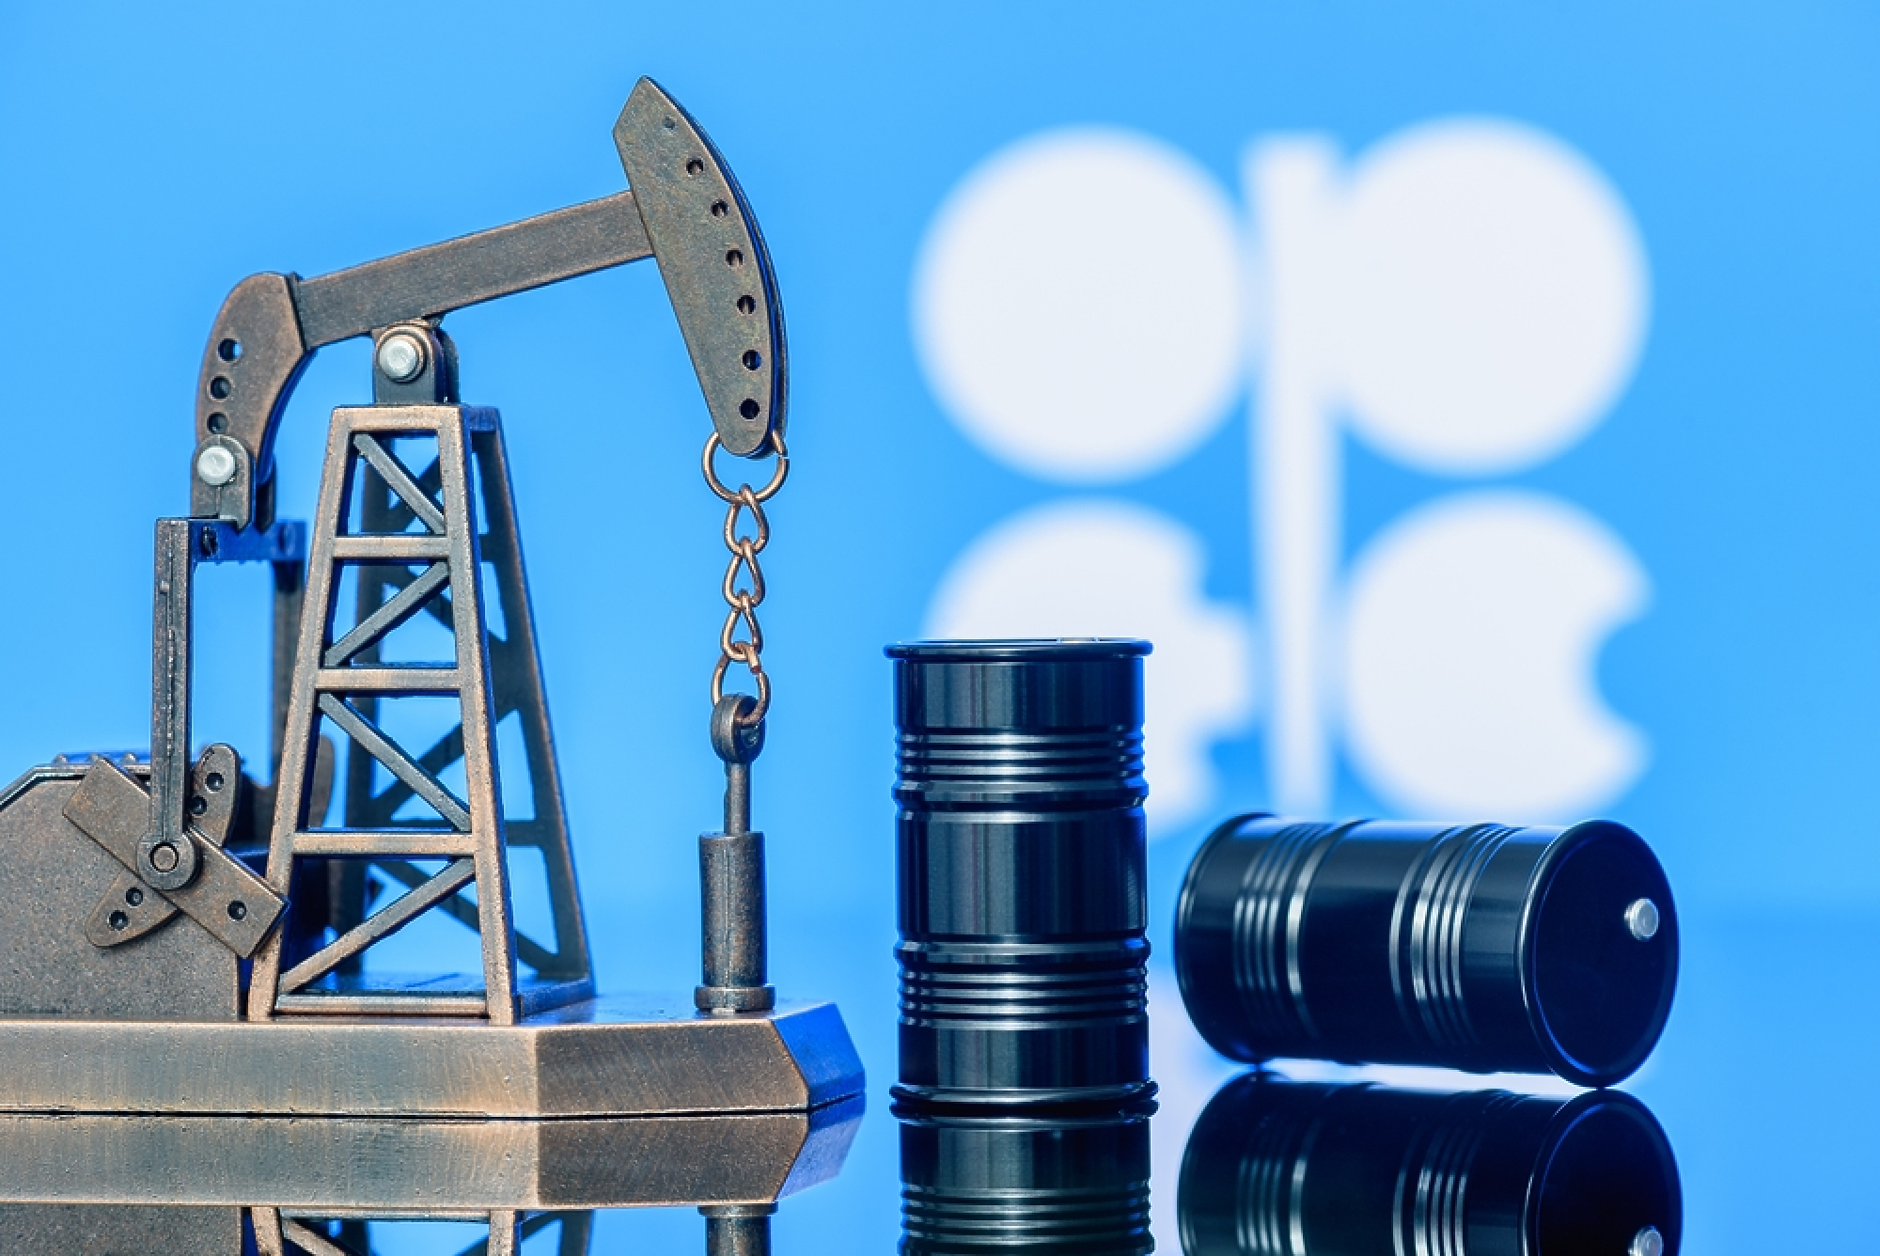 Петролът на ОПЕК прескочи прага от 80 долара за барел